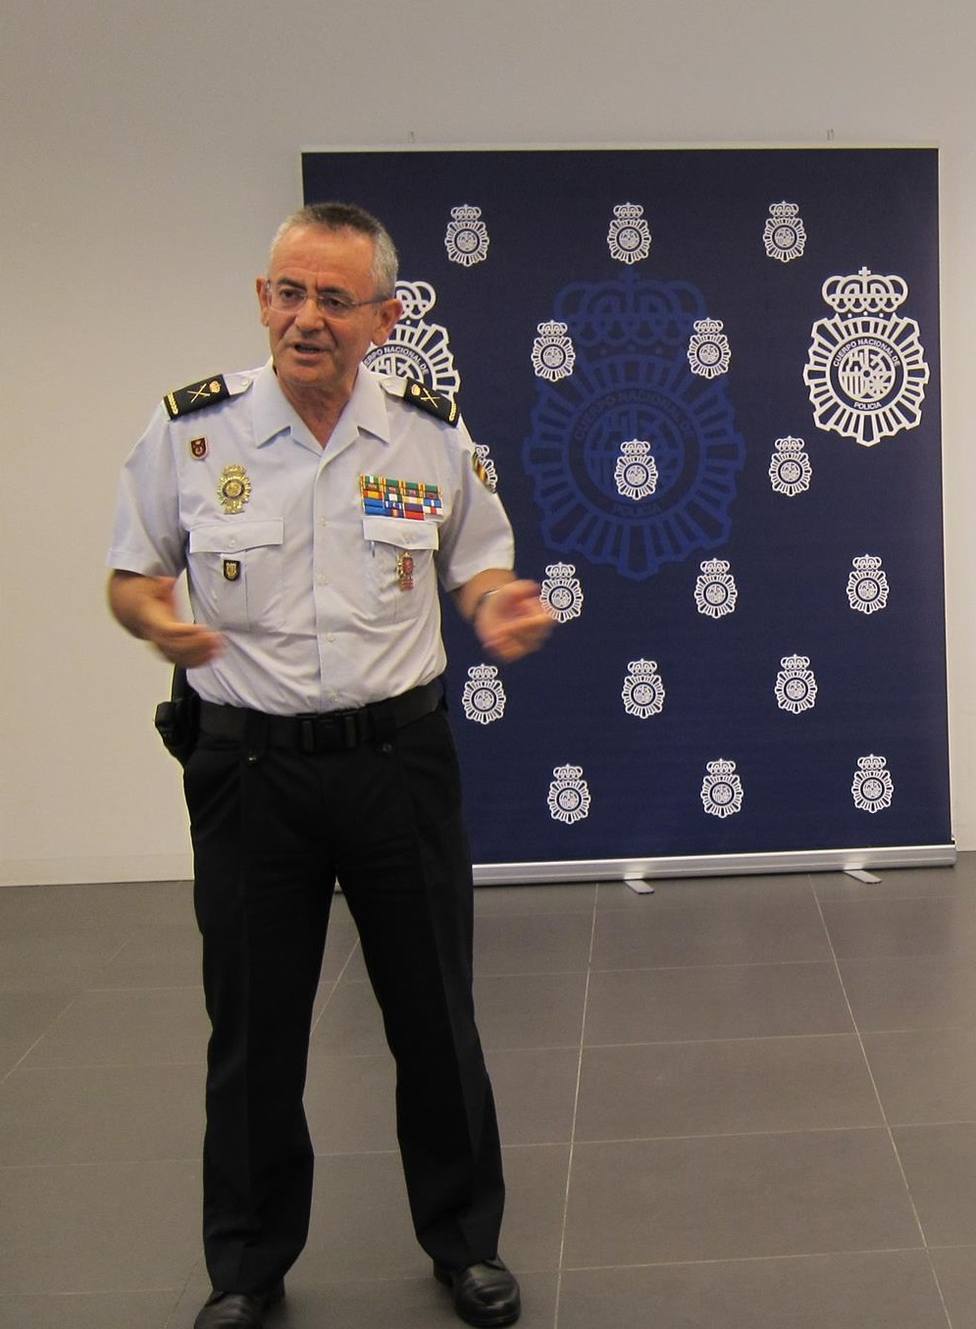 El jefe superior de Policía Nacional en La Rioja se trasladará al País Vasco para ocupar allí el mismo puesto